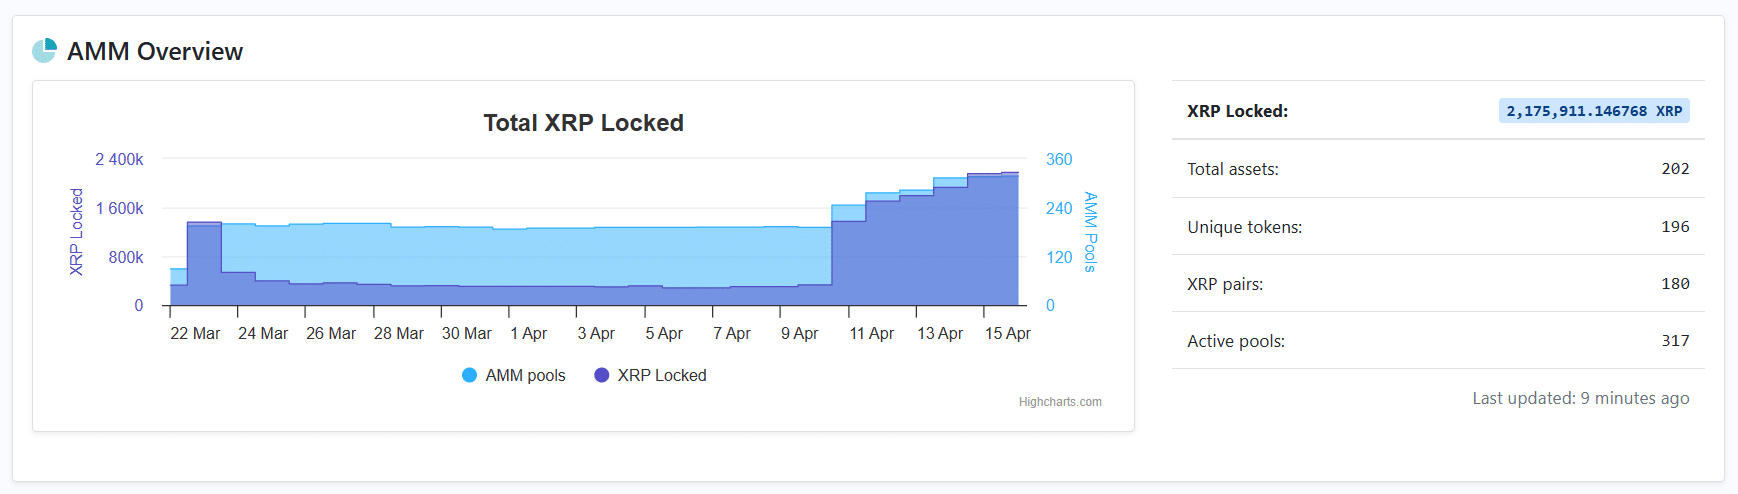 Количество заблокированных XRP в пулах XRPL AMM превысило 2 100 000, поскольку надвигается шок предложения XRP